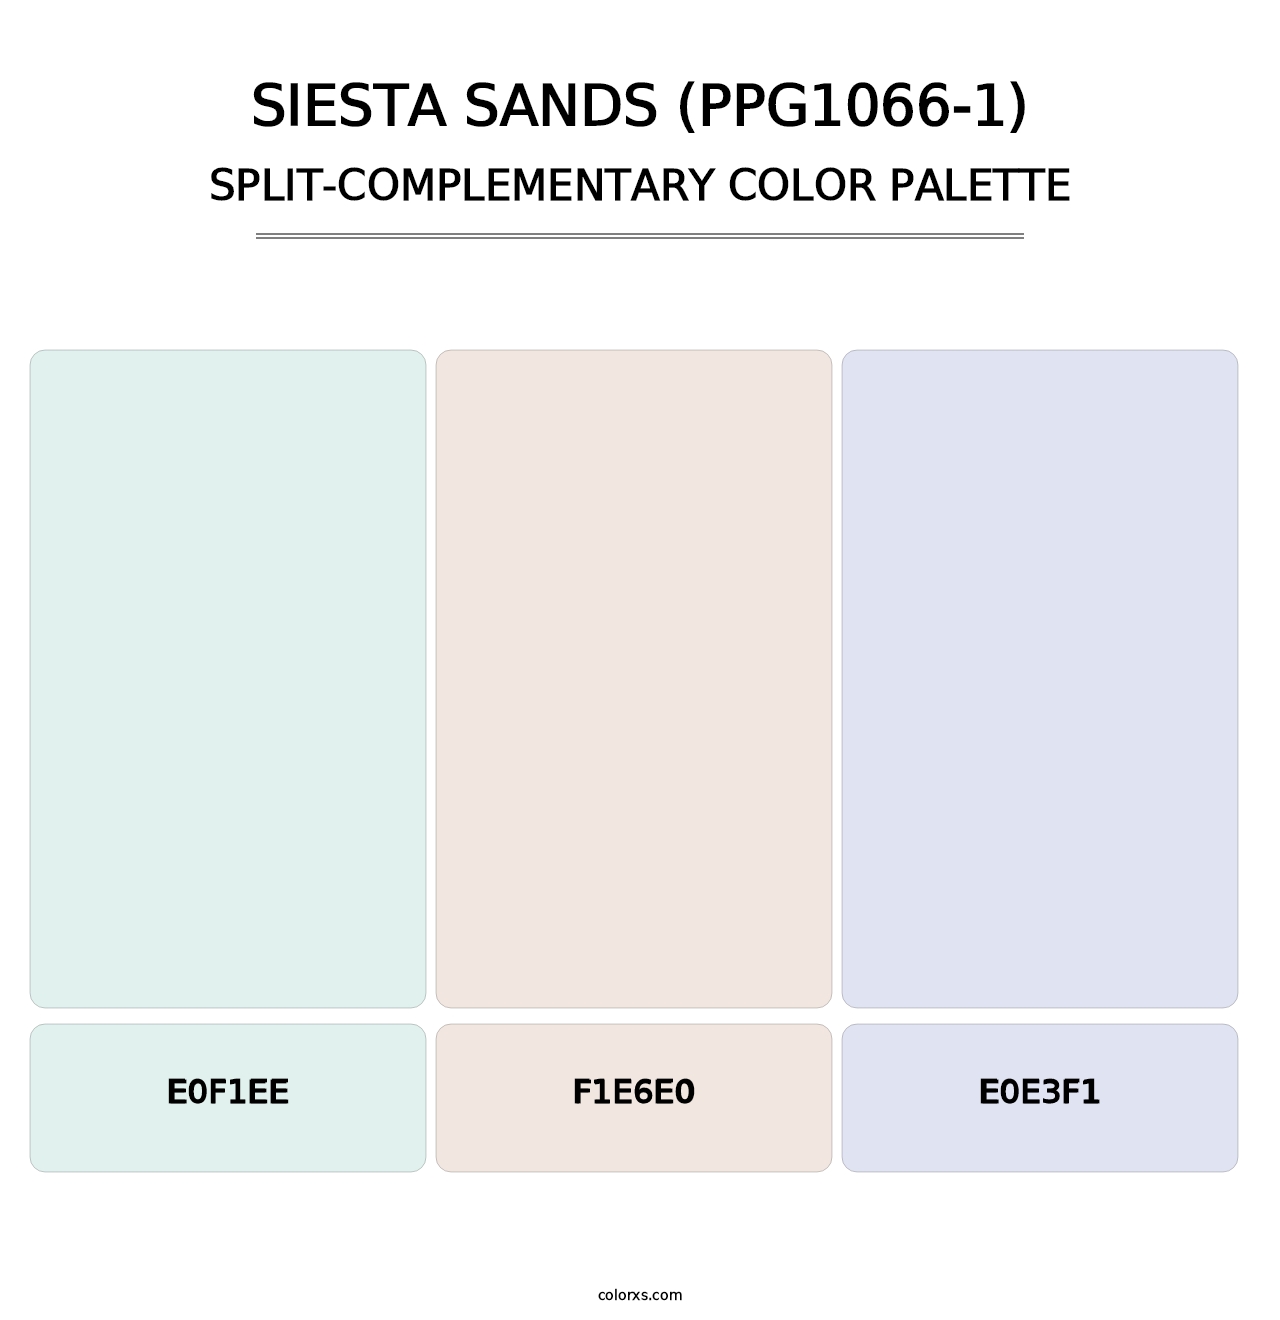 Siesta Sands (PPG1066-1) - Split-Complementary Color Palette